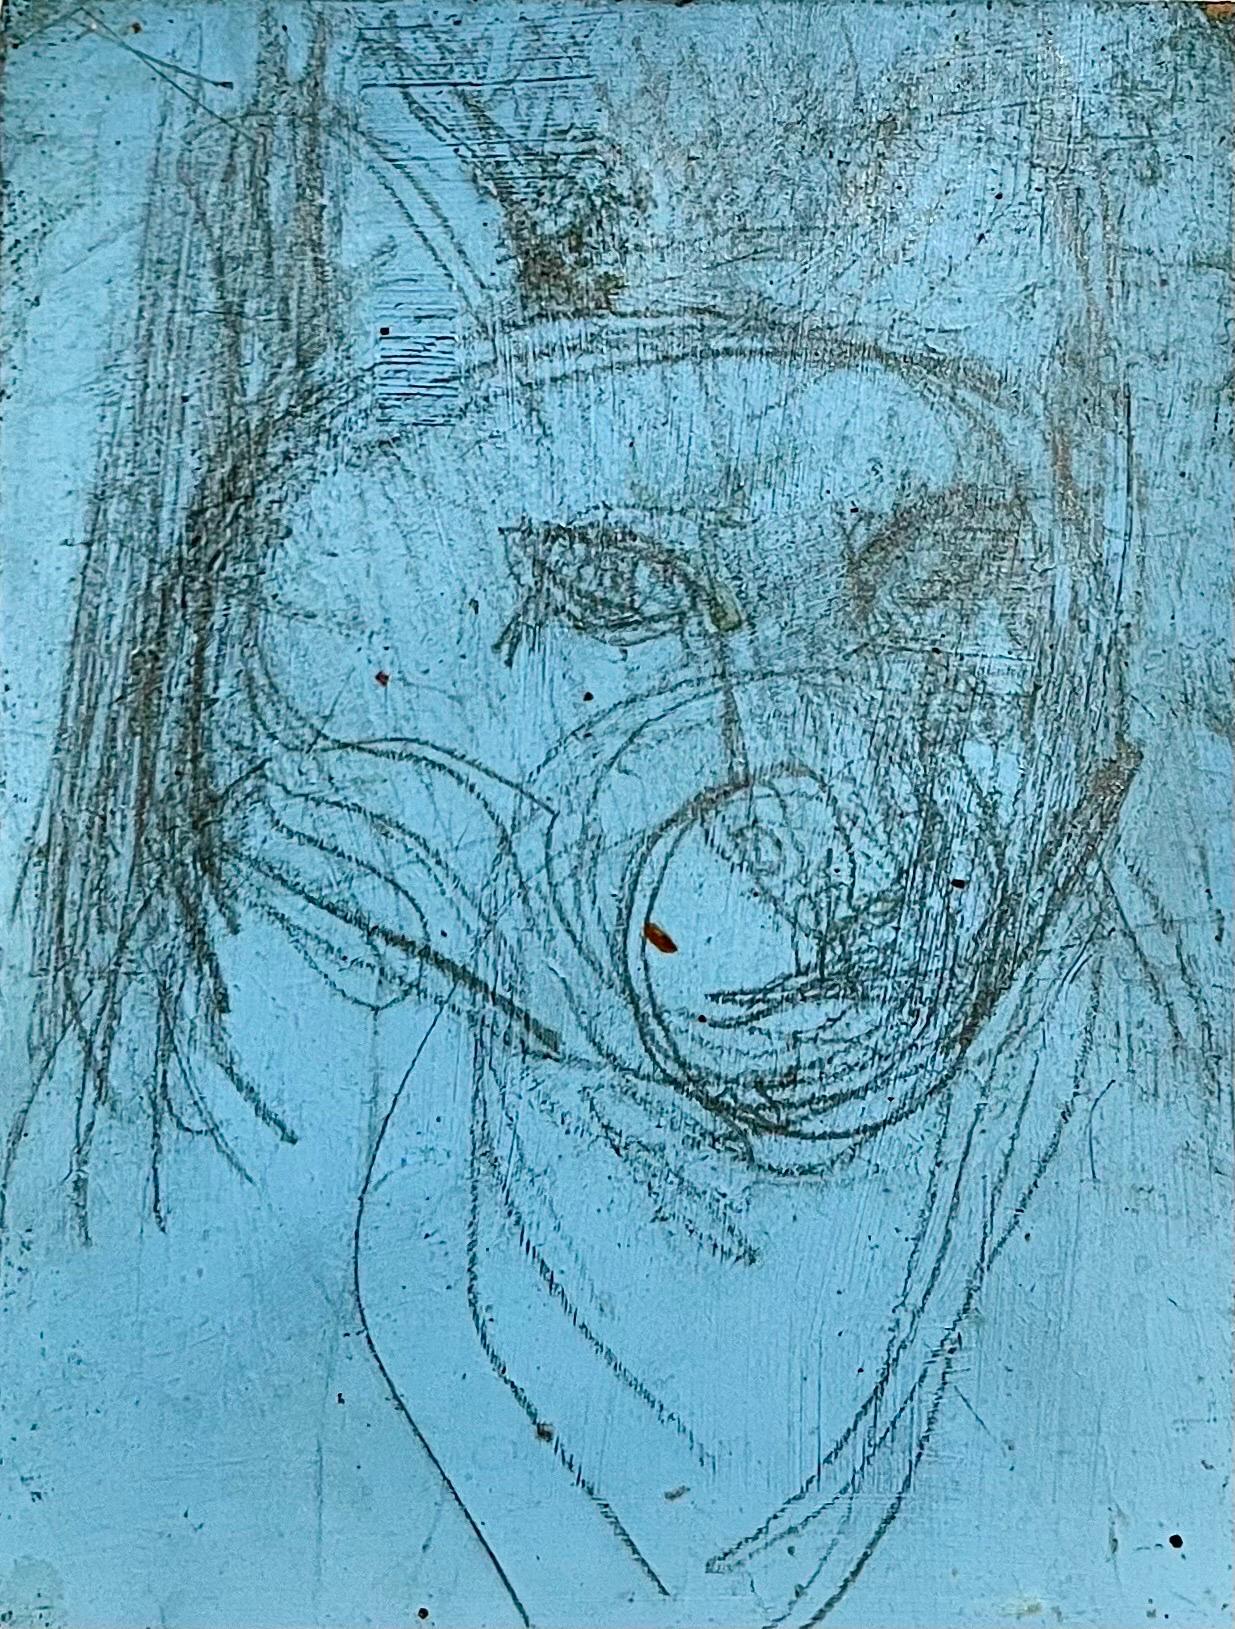 Abstrakt-expressionistisches modernistisches Ölgemälde, Hund-Zeichnung, Edward Avedisian 